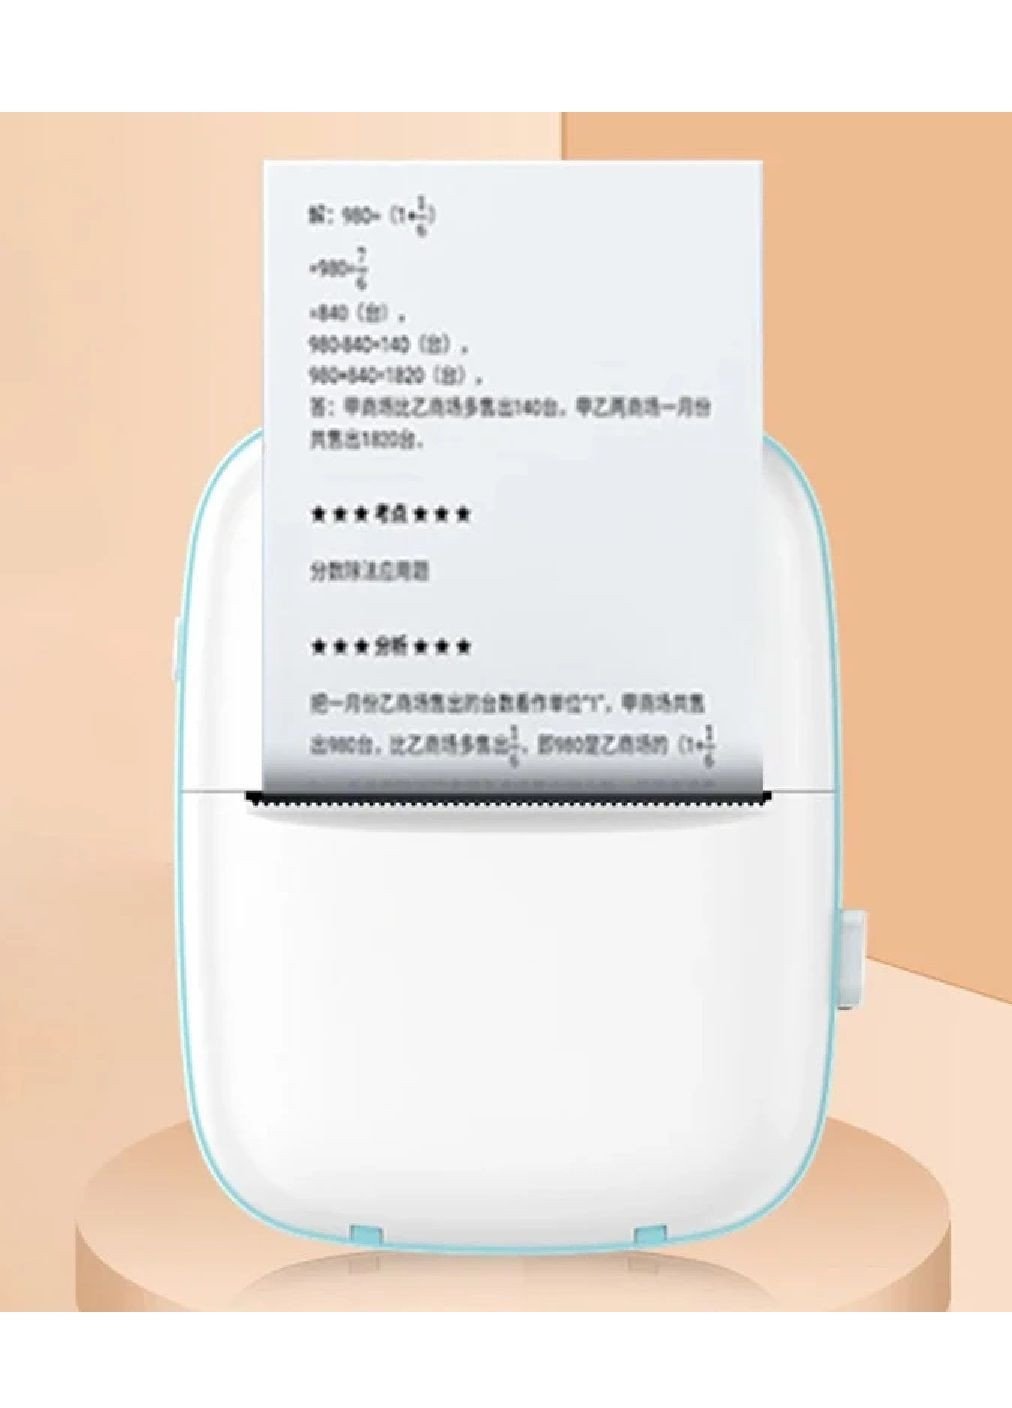 Термопринтер принтер портативний акумуляторний з термодруком по Bluetooth для дітей 11.3x8.3x3.8 см (476547-Prob) Блакитний Unbranded (284117315)